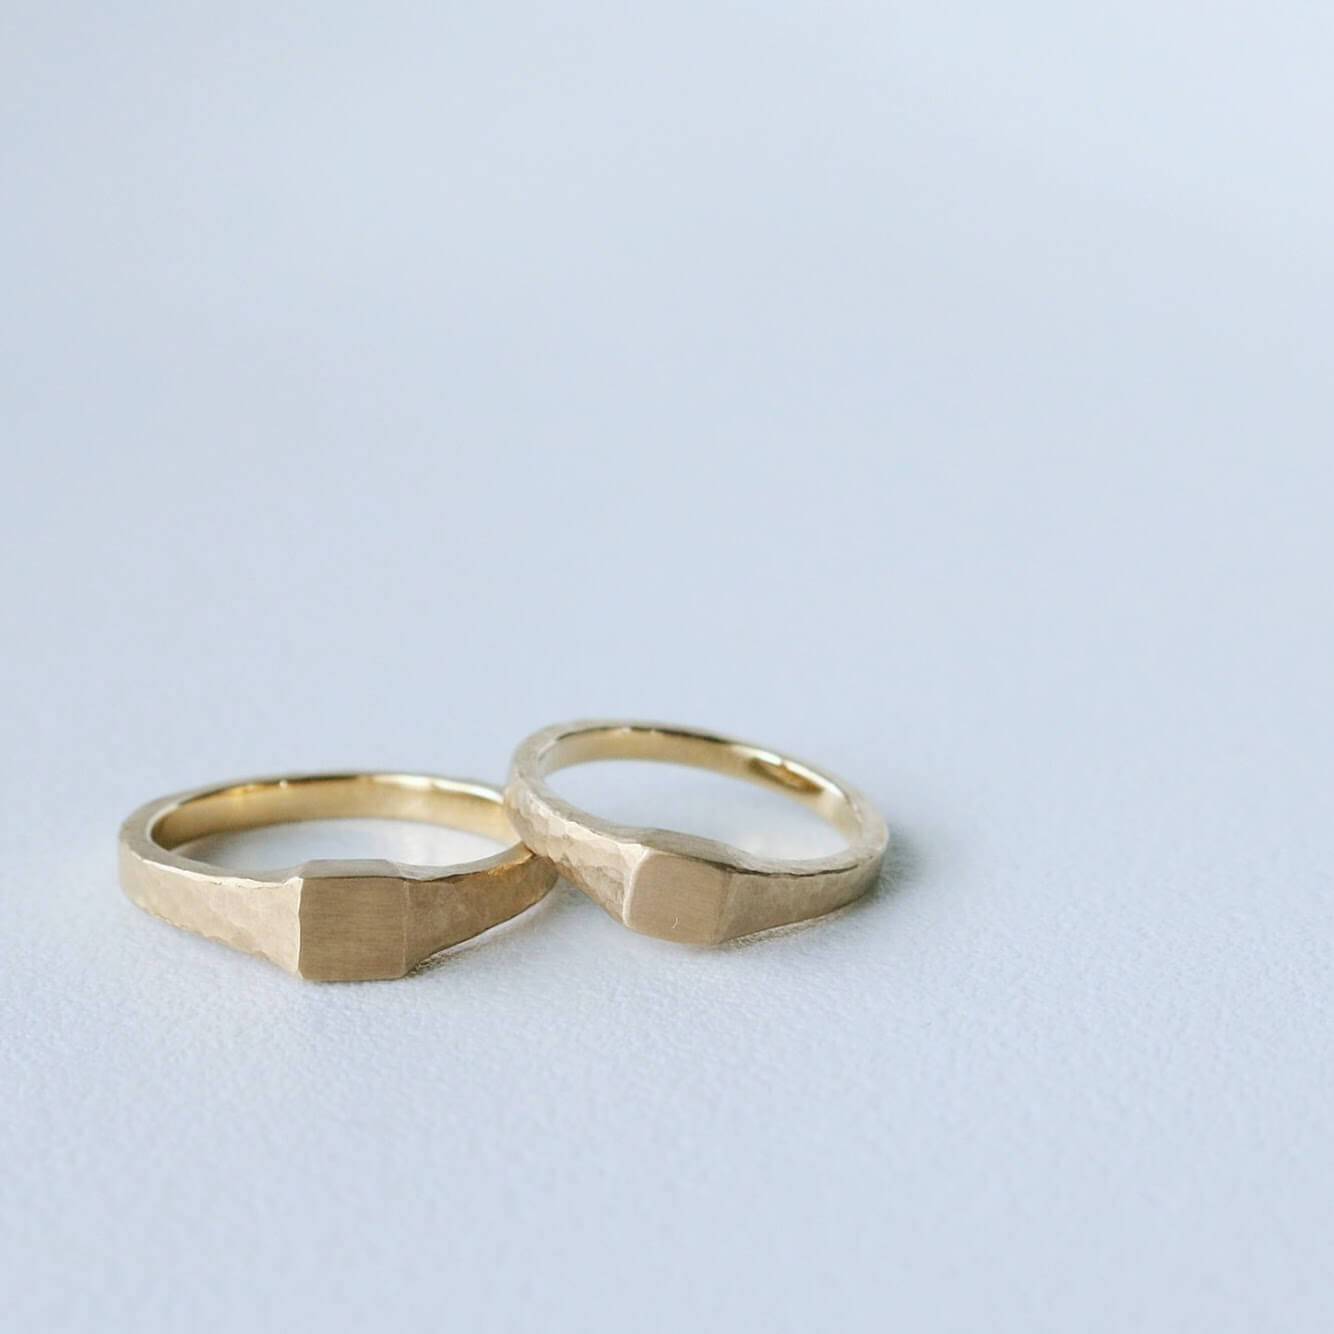 男性におすすめのかっこいい結婚指輪 人気デザインとテクスチャの紹介